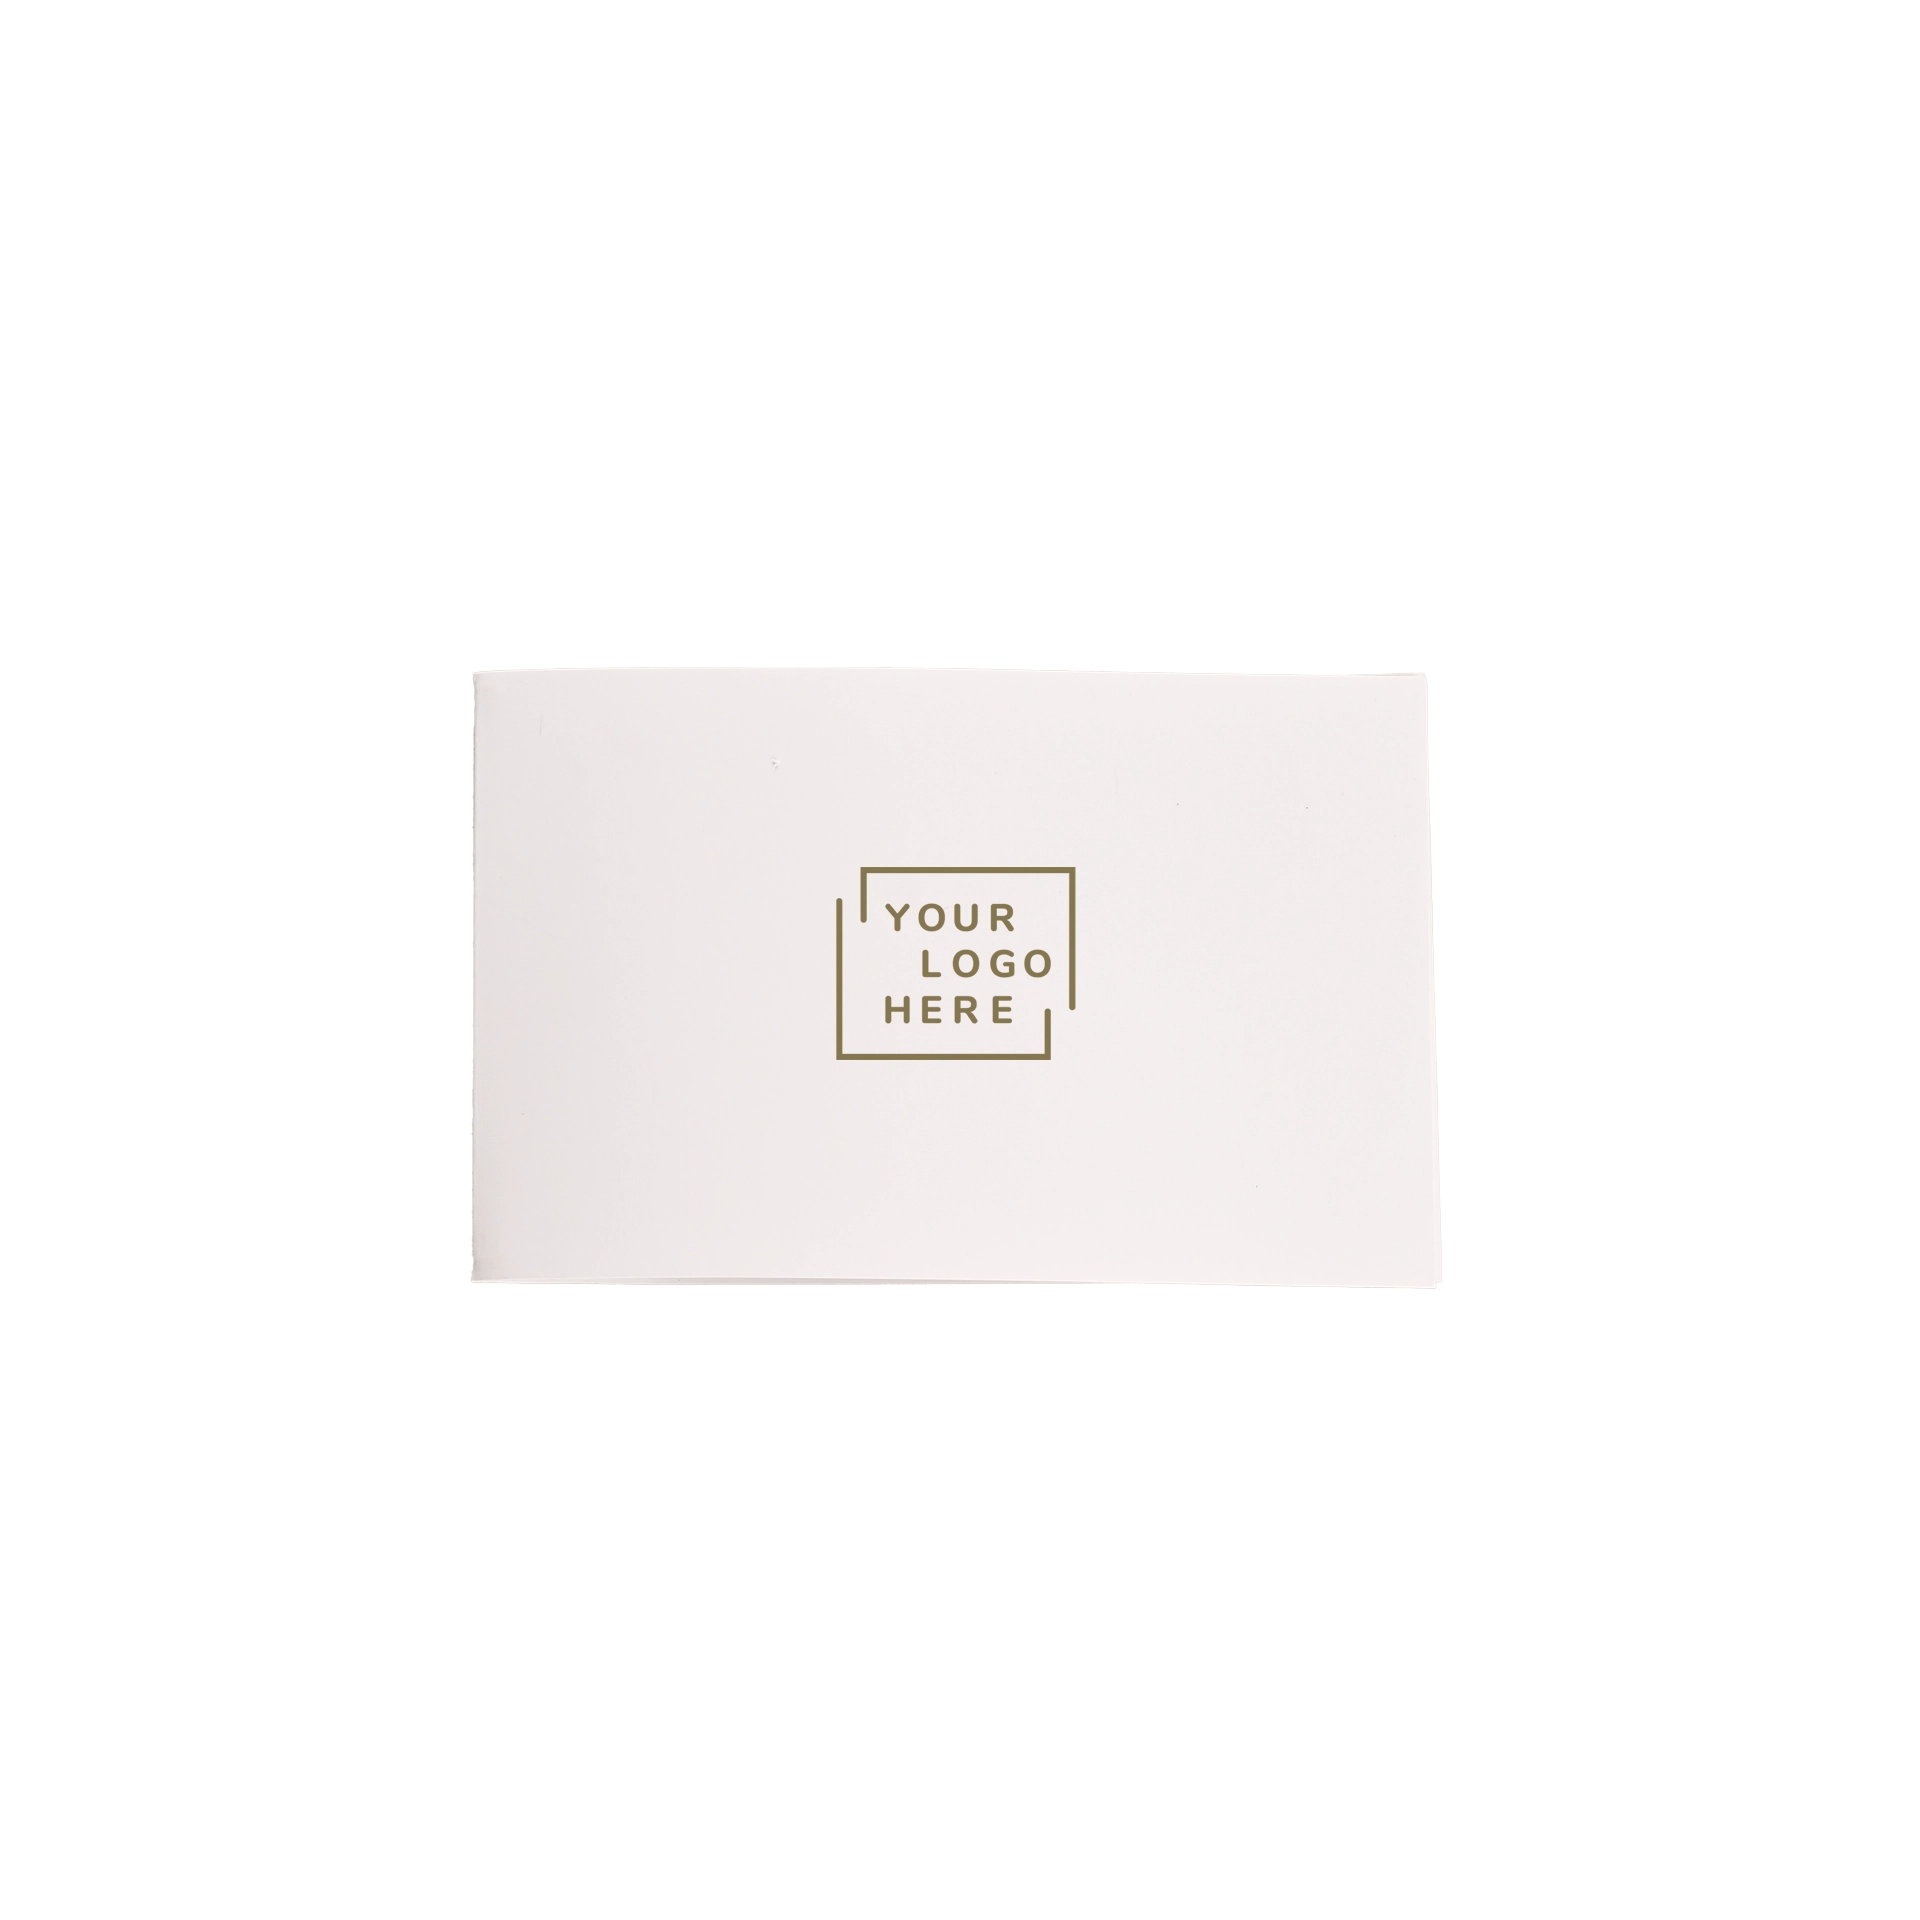 Schlüsseletuikarte E1 11x7 cm Papier gestrichen oder Usomano 4/4 fbg. Digitaldruck